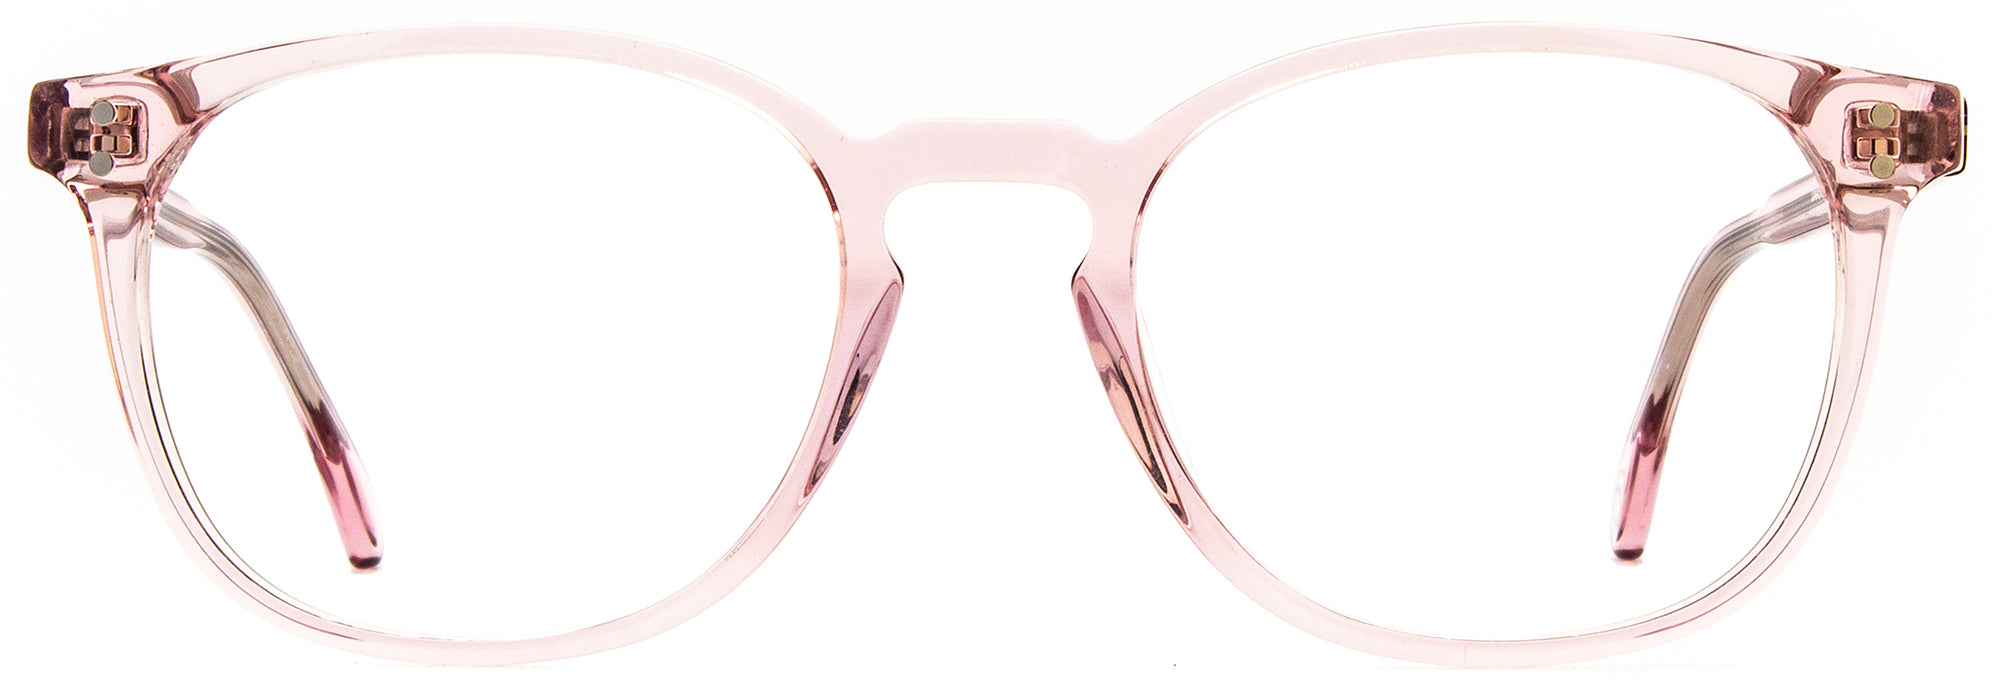 Alexander Daas - Milan Eyeglasses - Pink Crystal - Front View